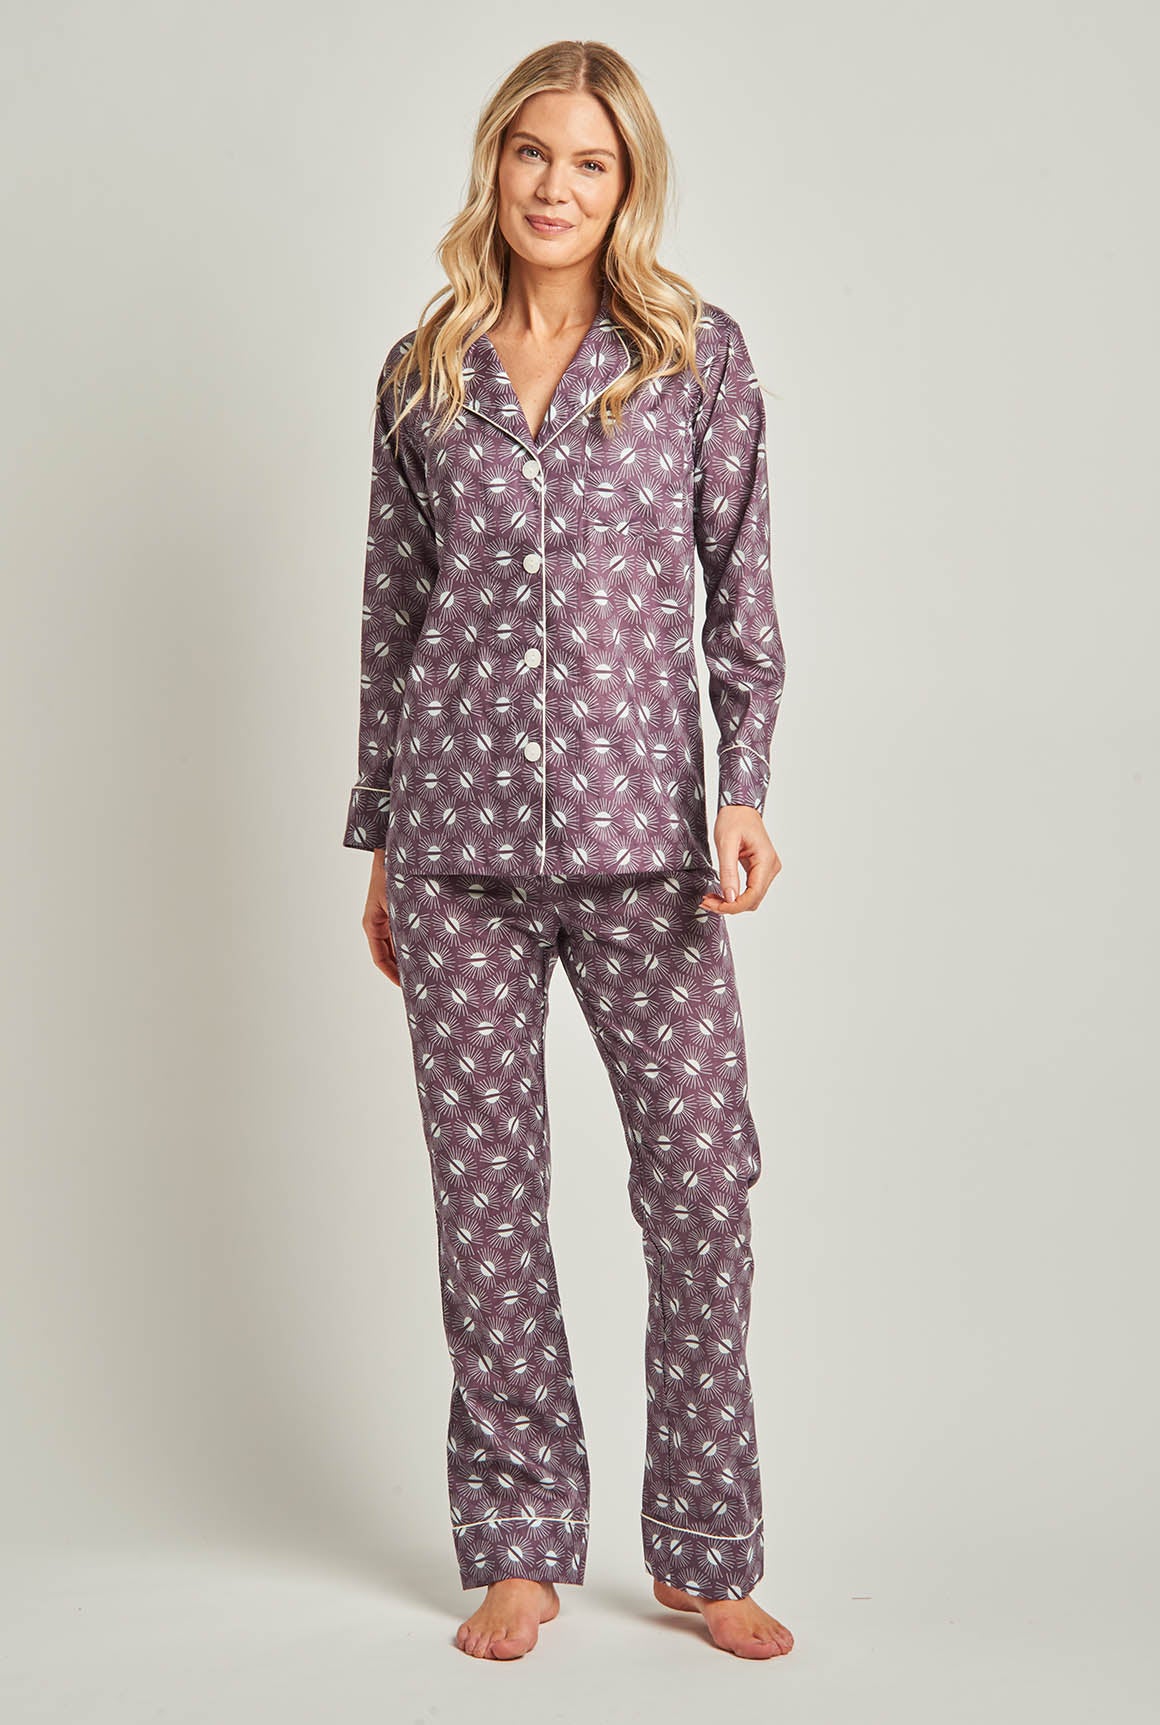 Egyptian Cotton Pajamas for Women